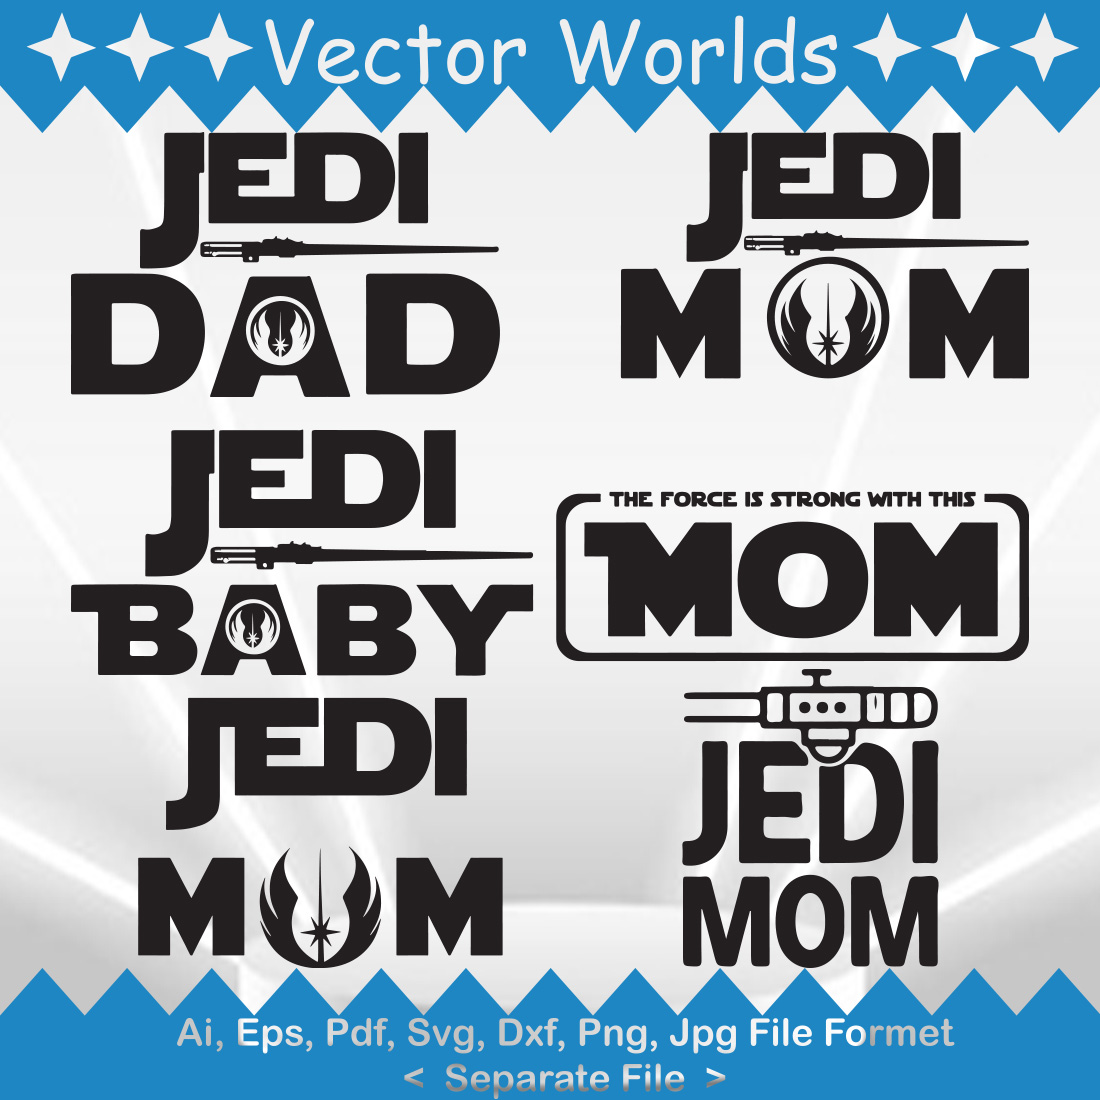 Jedi Mom SVG Vector Design cover image.